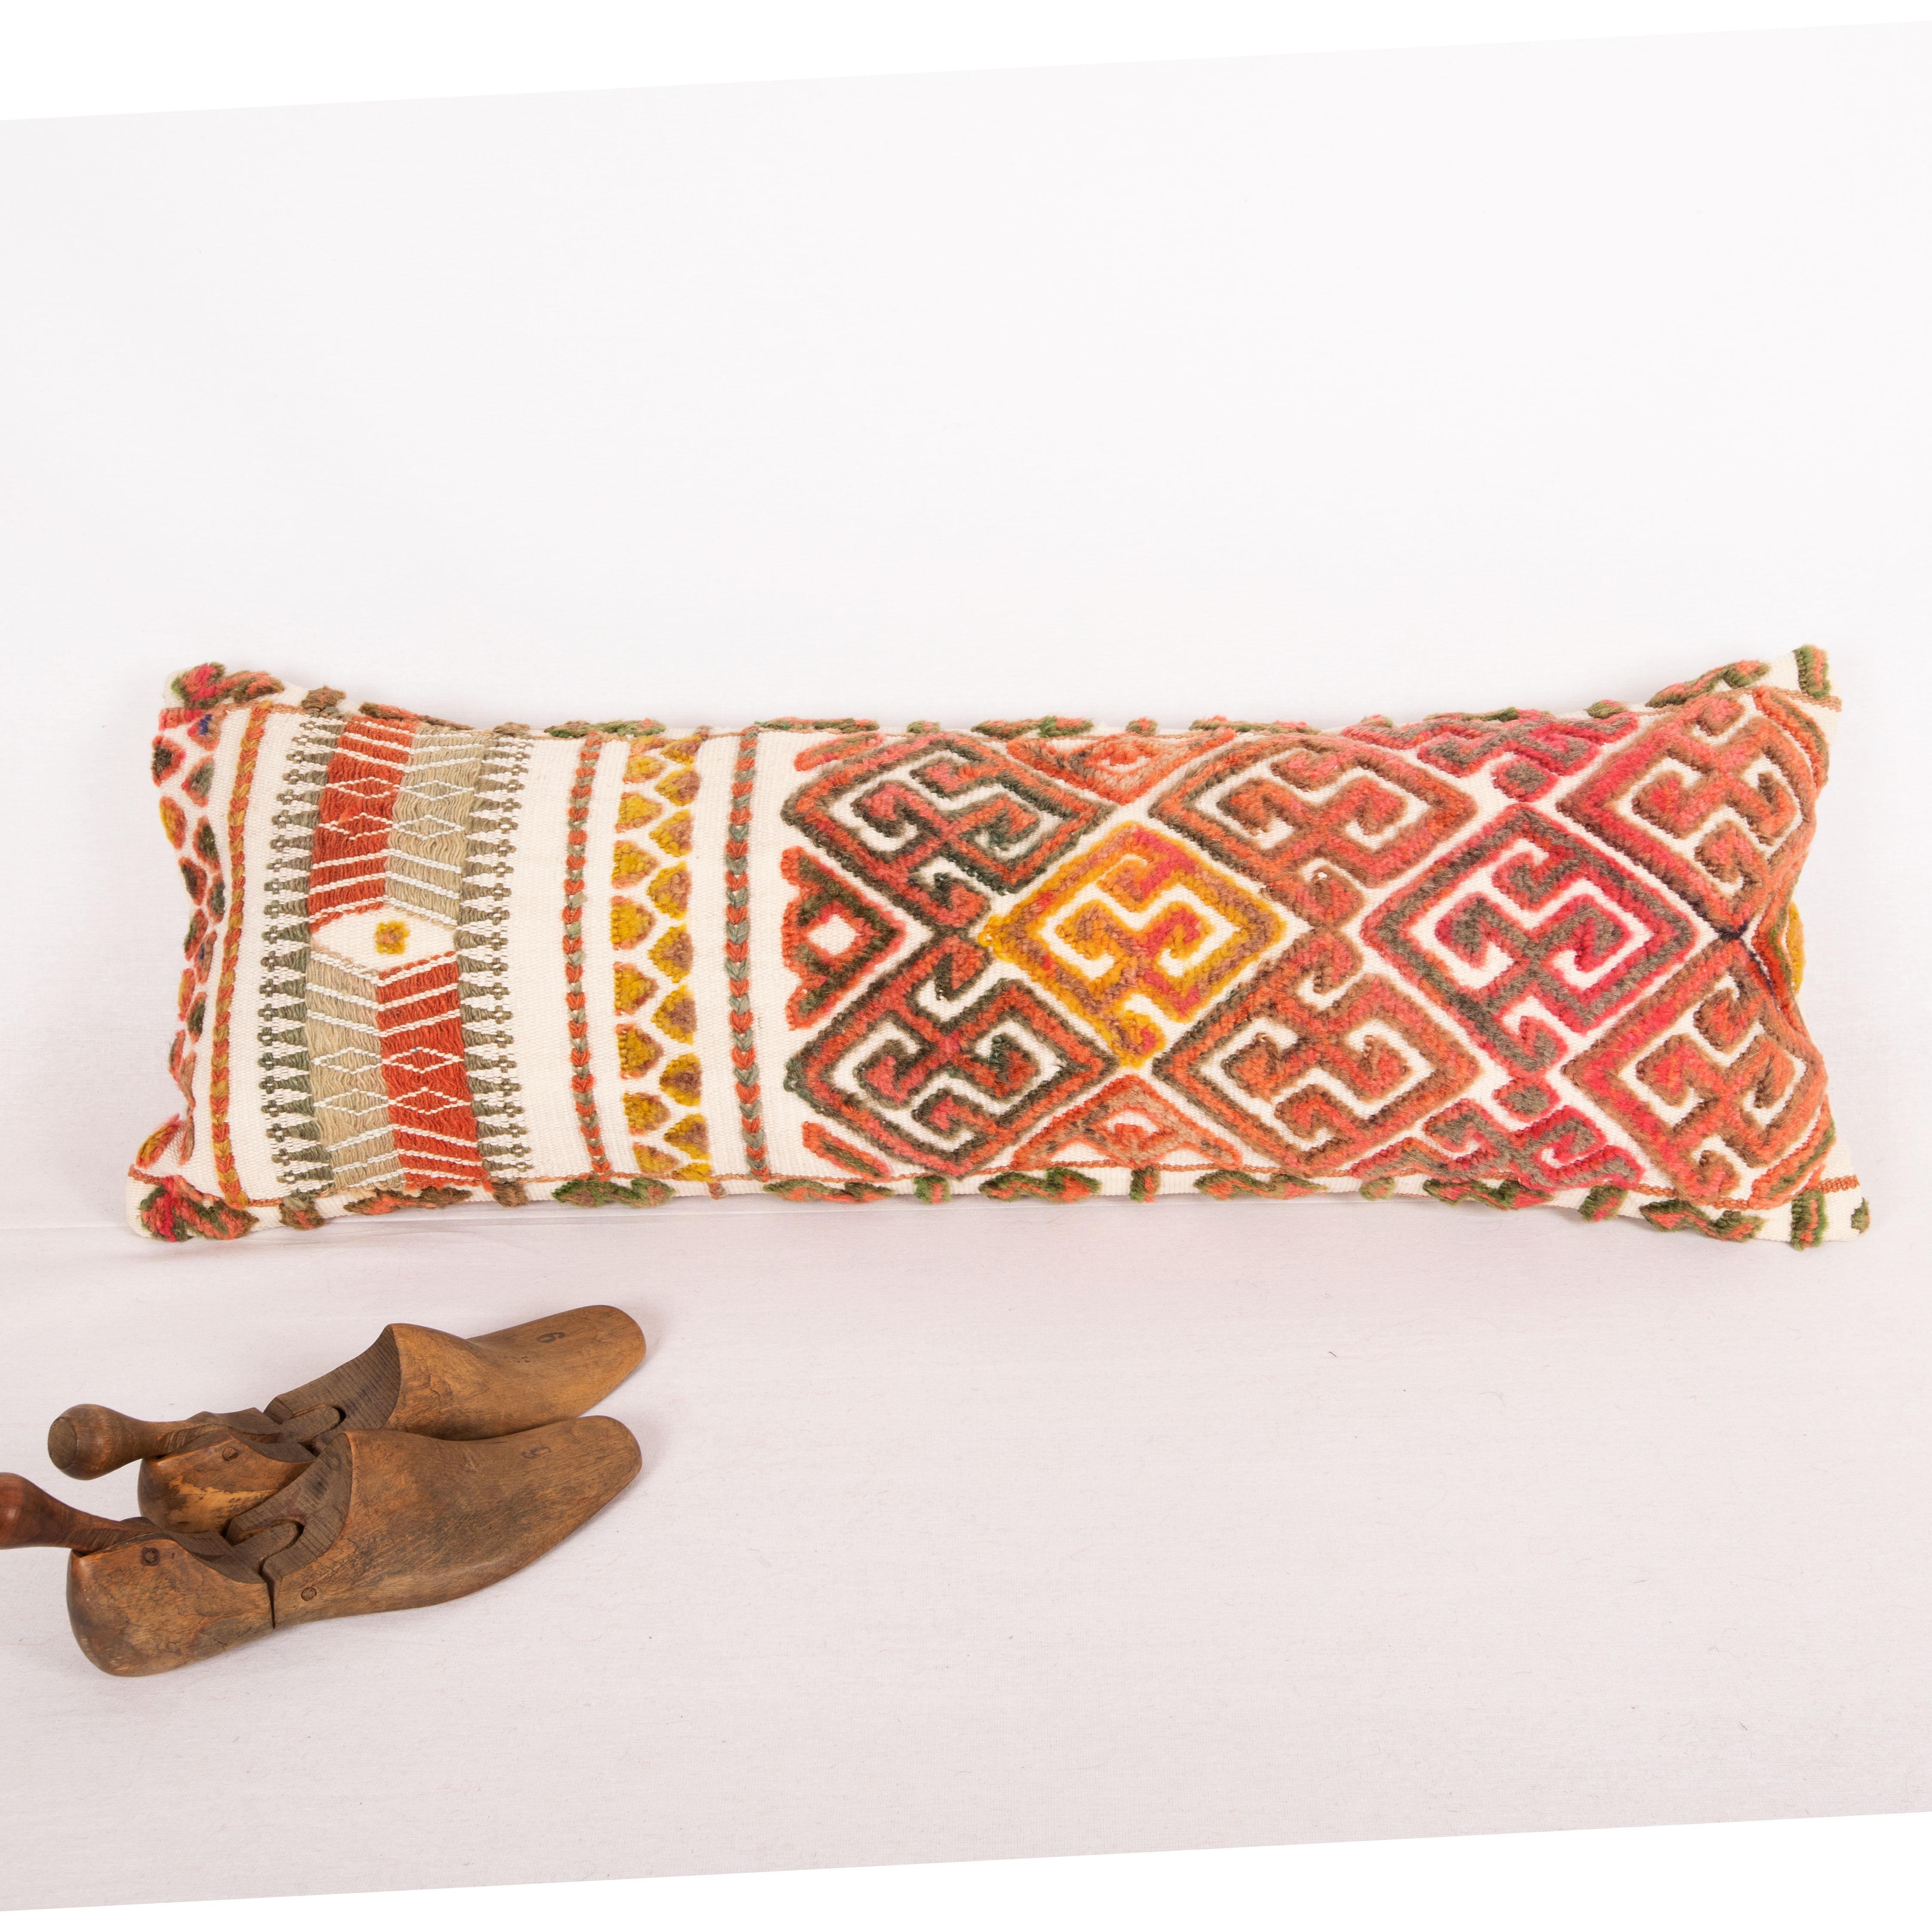 Tribal Pillow Cover Made from an Early 20th C. Karakalpak Tent Band, Uzbekistan